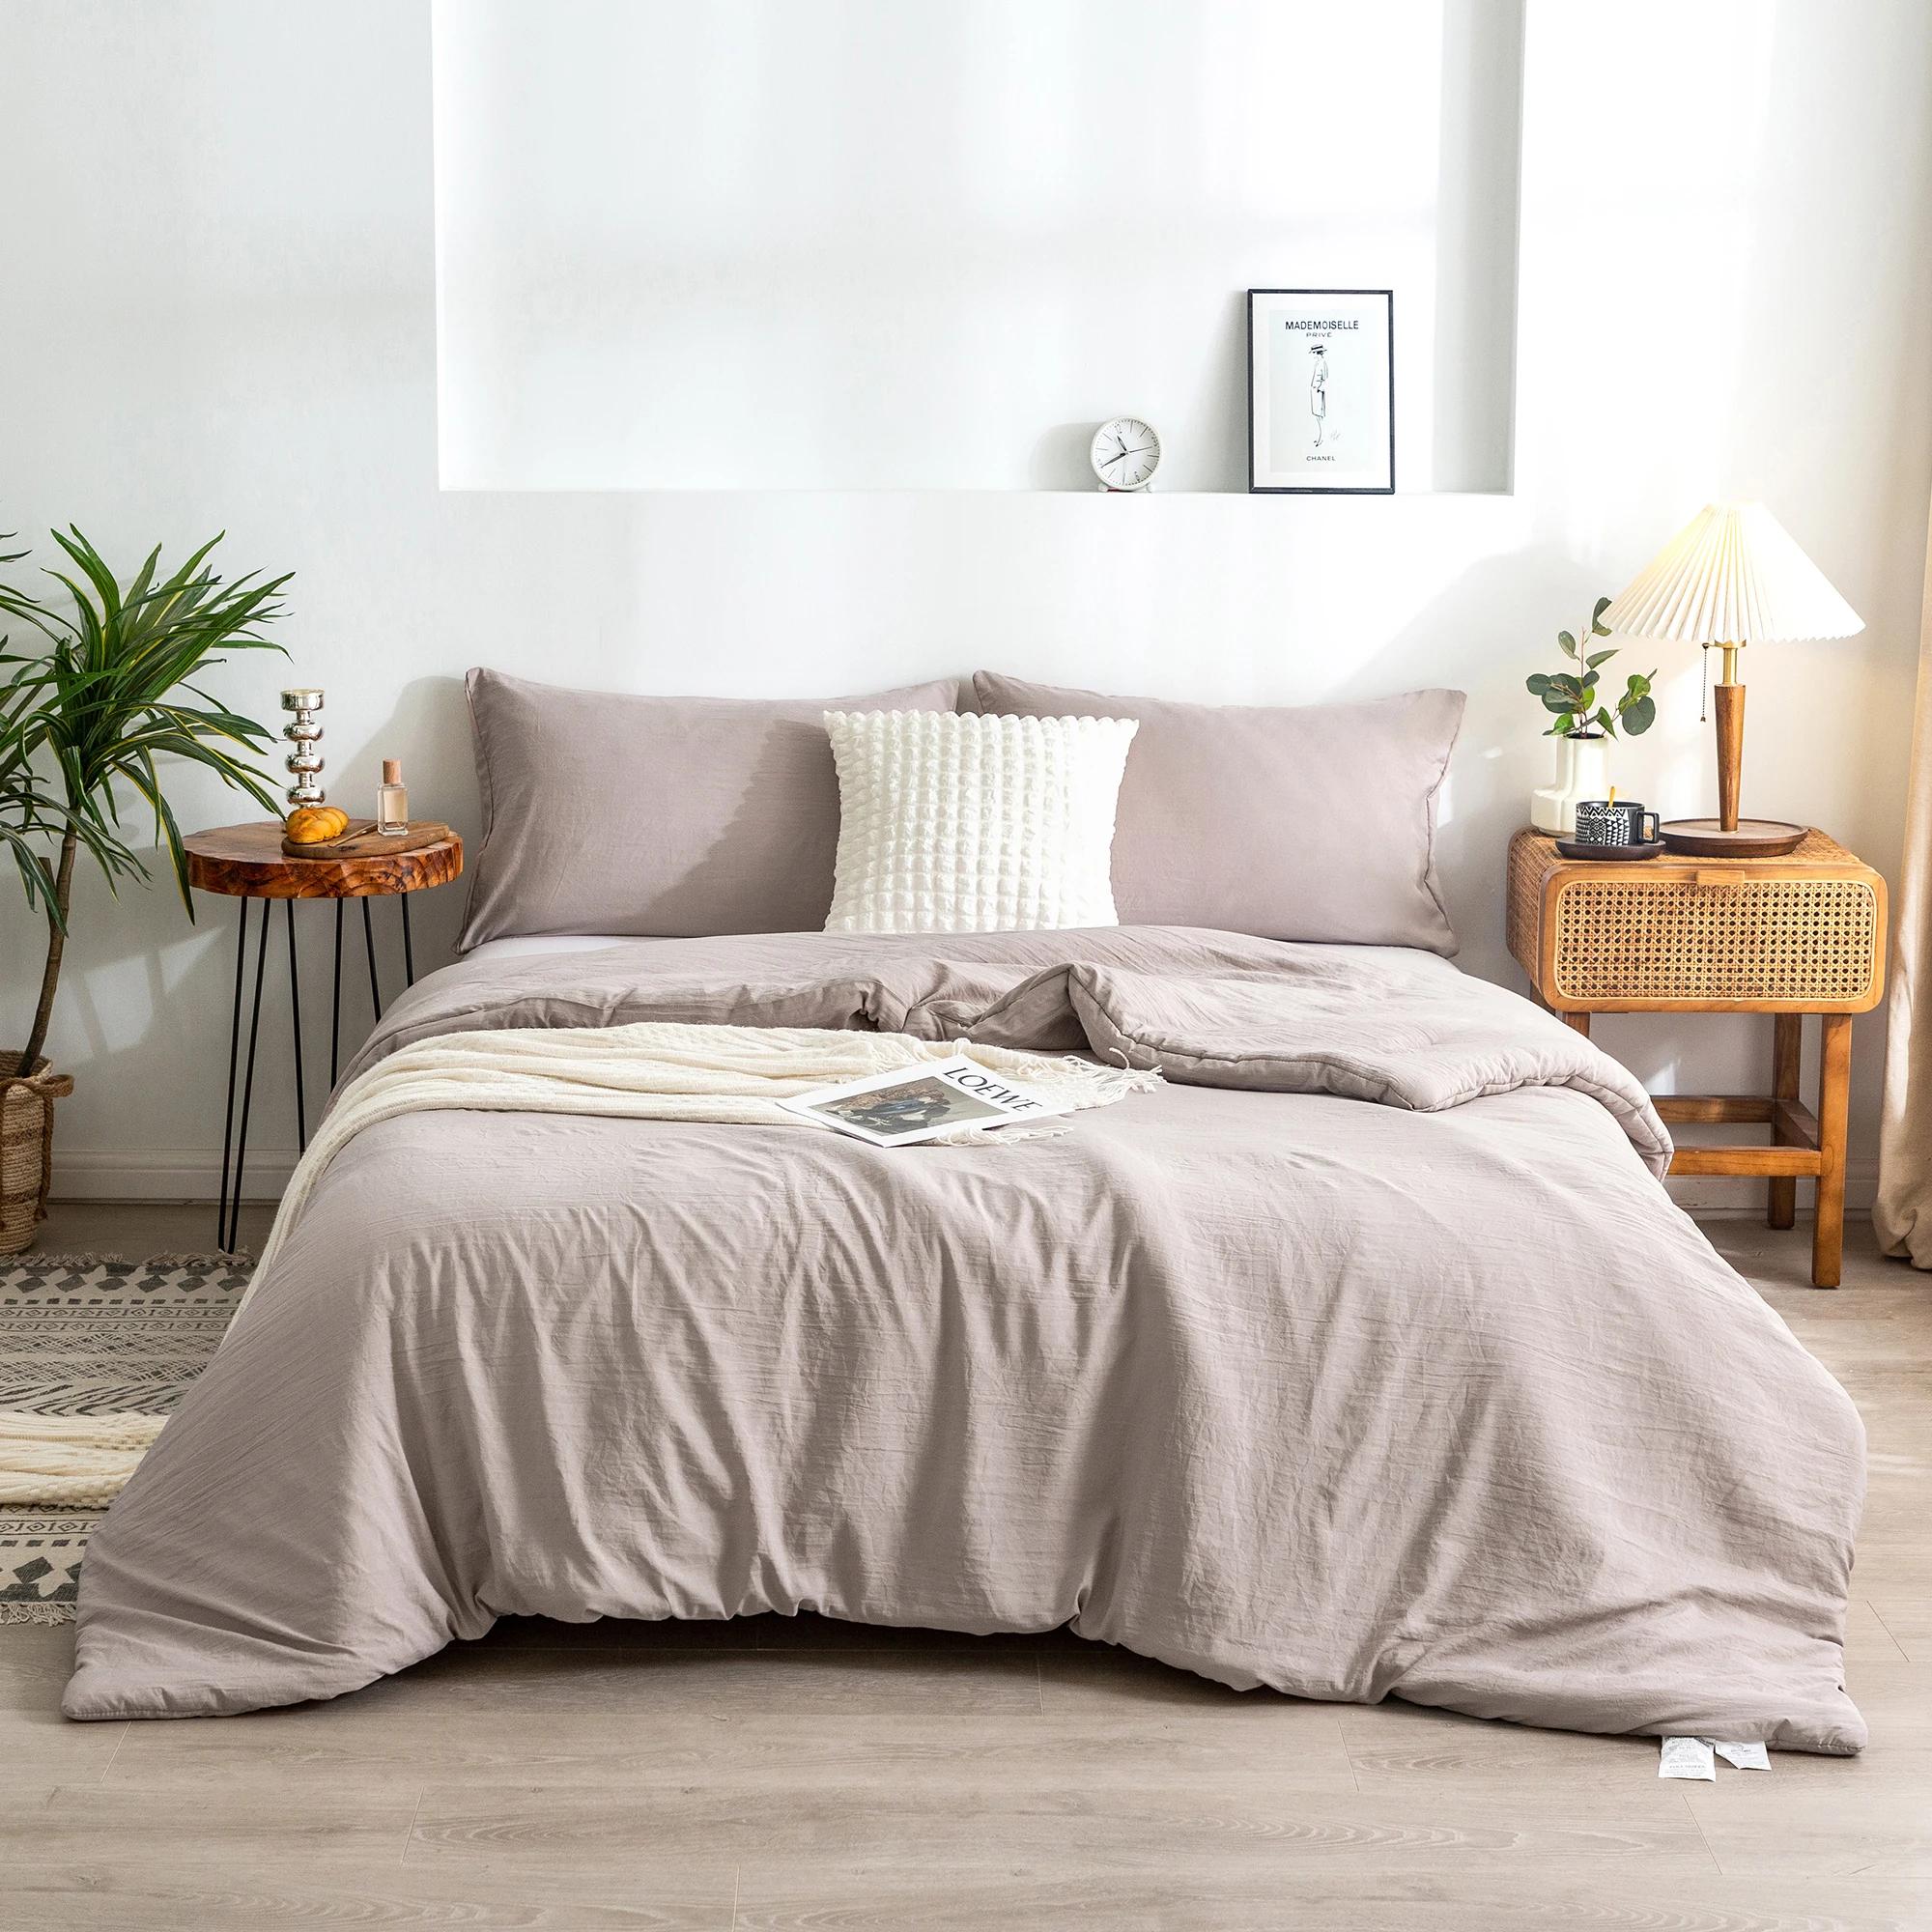 

Twin XL Bedsure Lightweight Duvet Sets Bedding Comforter Beige Ultra-Soft All Season PolyCotton, with Comforter Pillow Sham